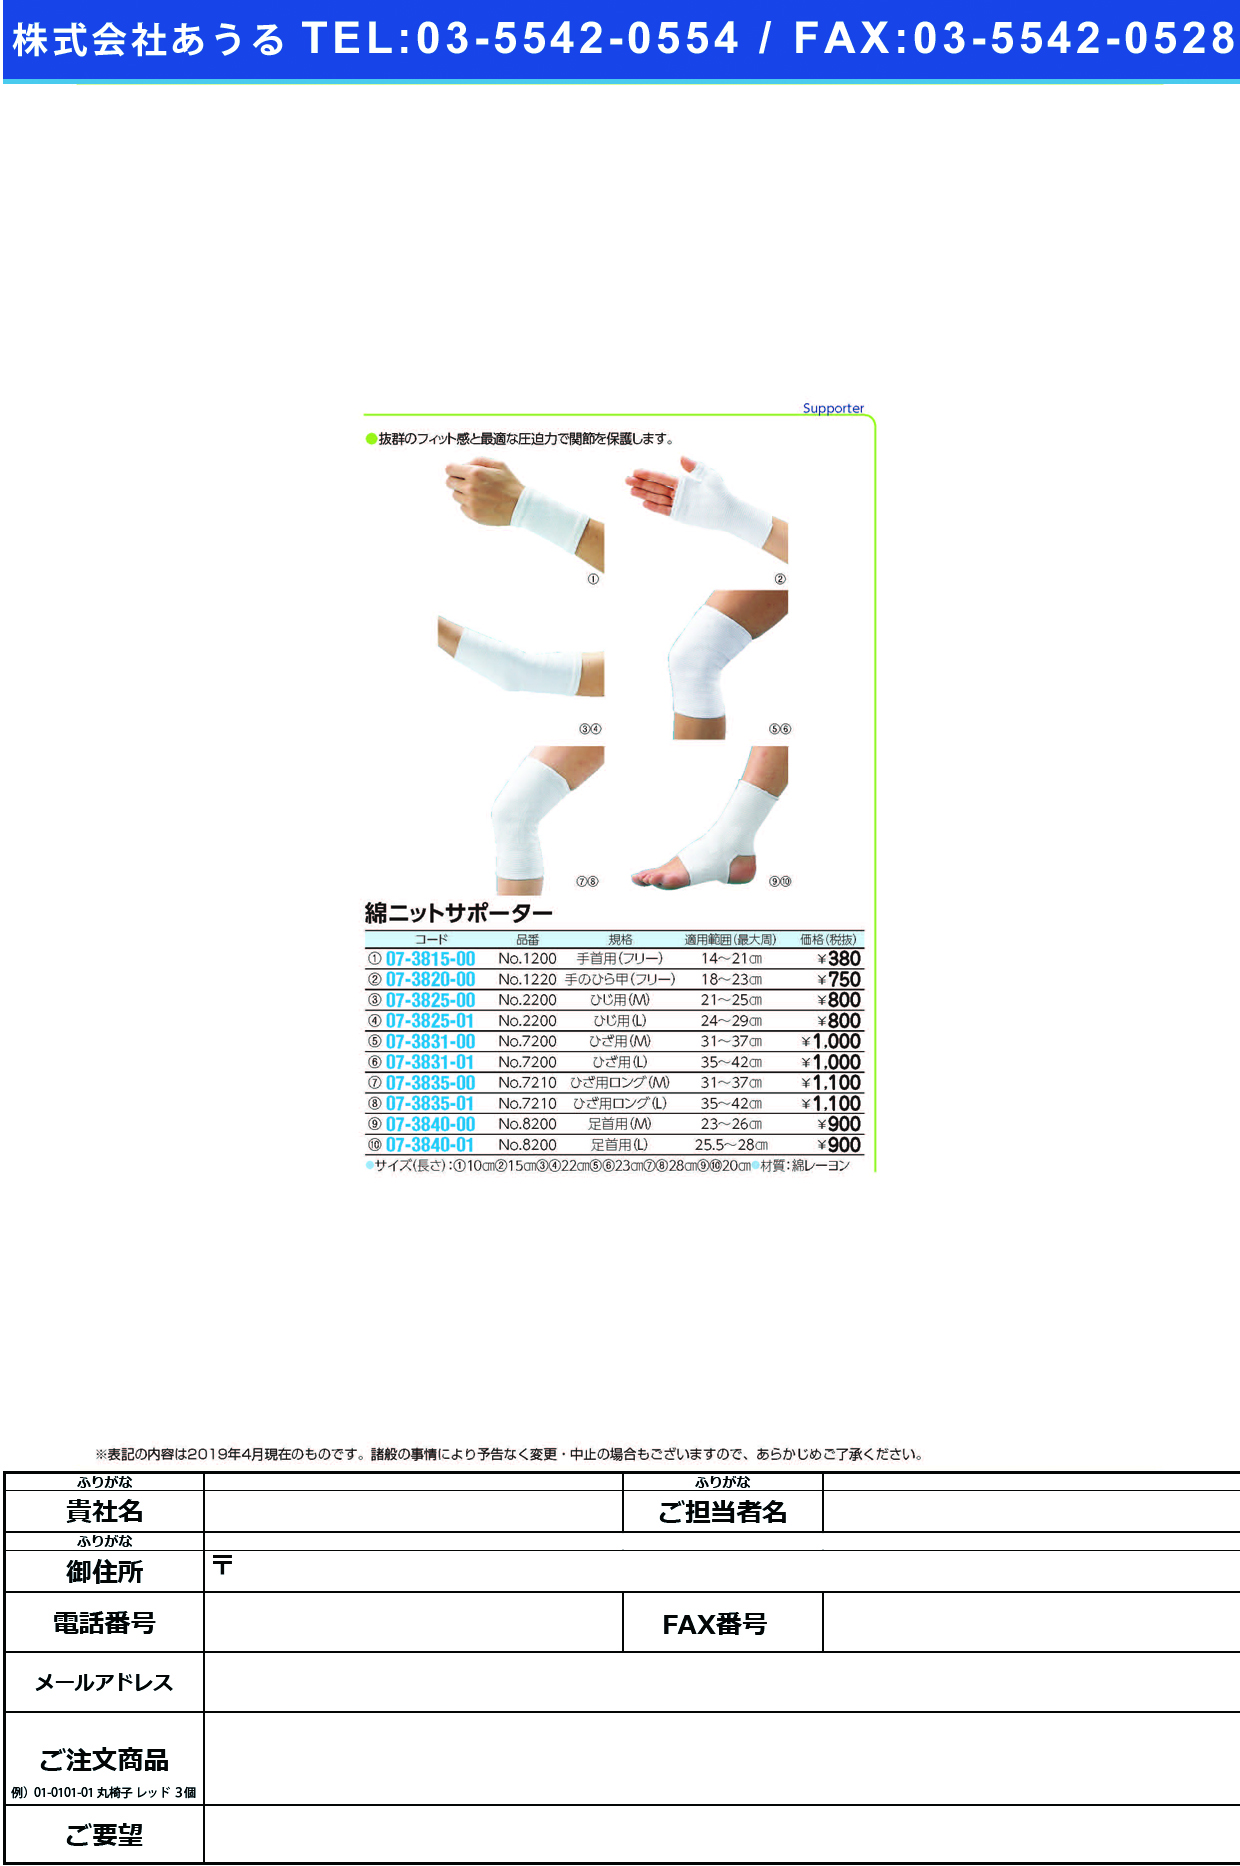 (07-3831-00)綿ニットサポーター（ひざ用） NO.7200(M) ﾒﾝﾆｯﾄｻﾎﾟｰﾀｰ(ﾋｻﾞﾖｳ)【1枚単位】【2019年カタログ商品】